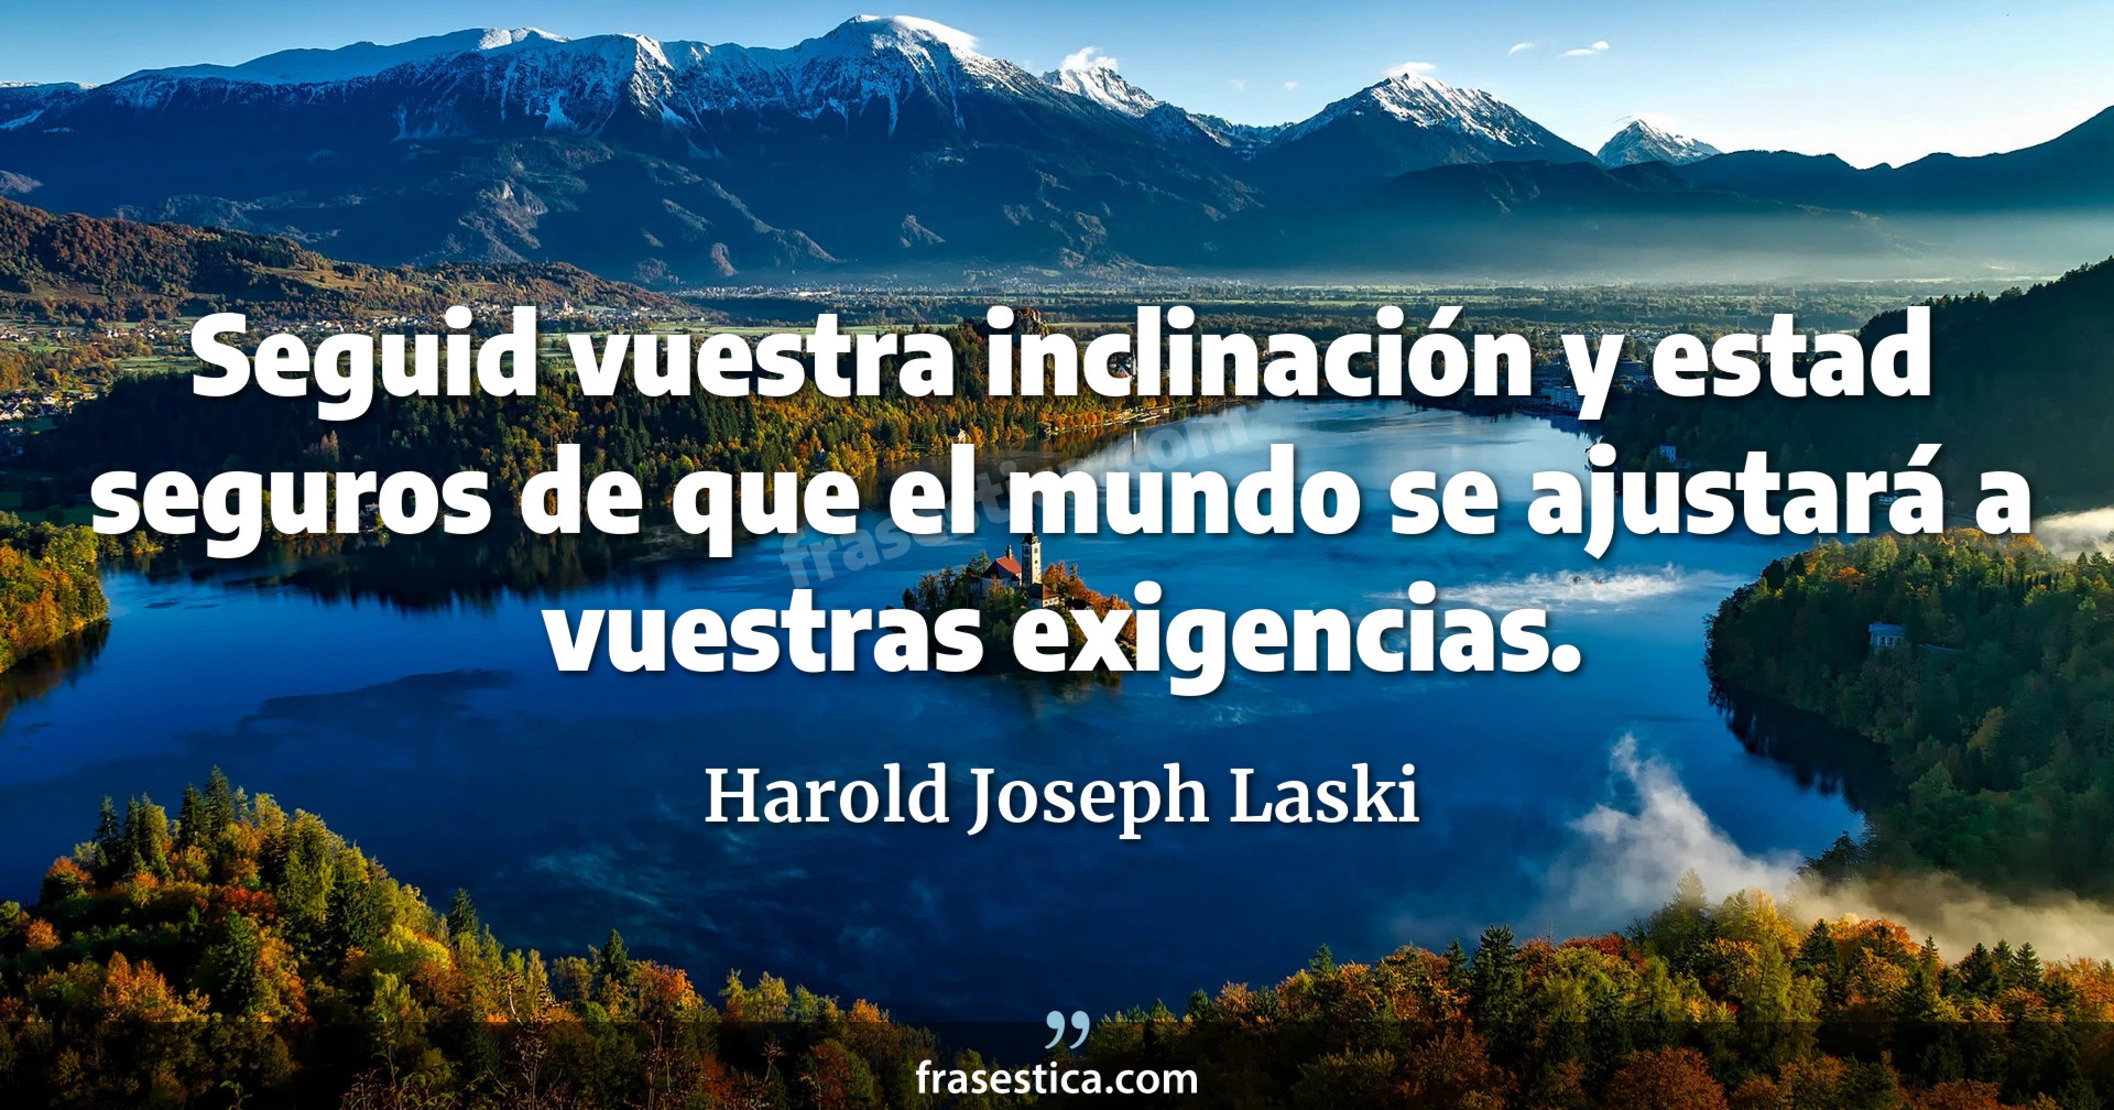 Seguid vuestra inclinación y estad seguros de que el mundo se ajustará a vuestras exigencias. - Harold Joseph Laski